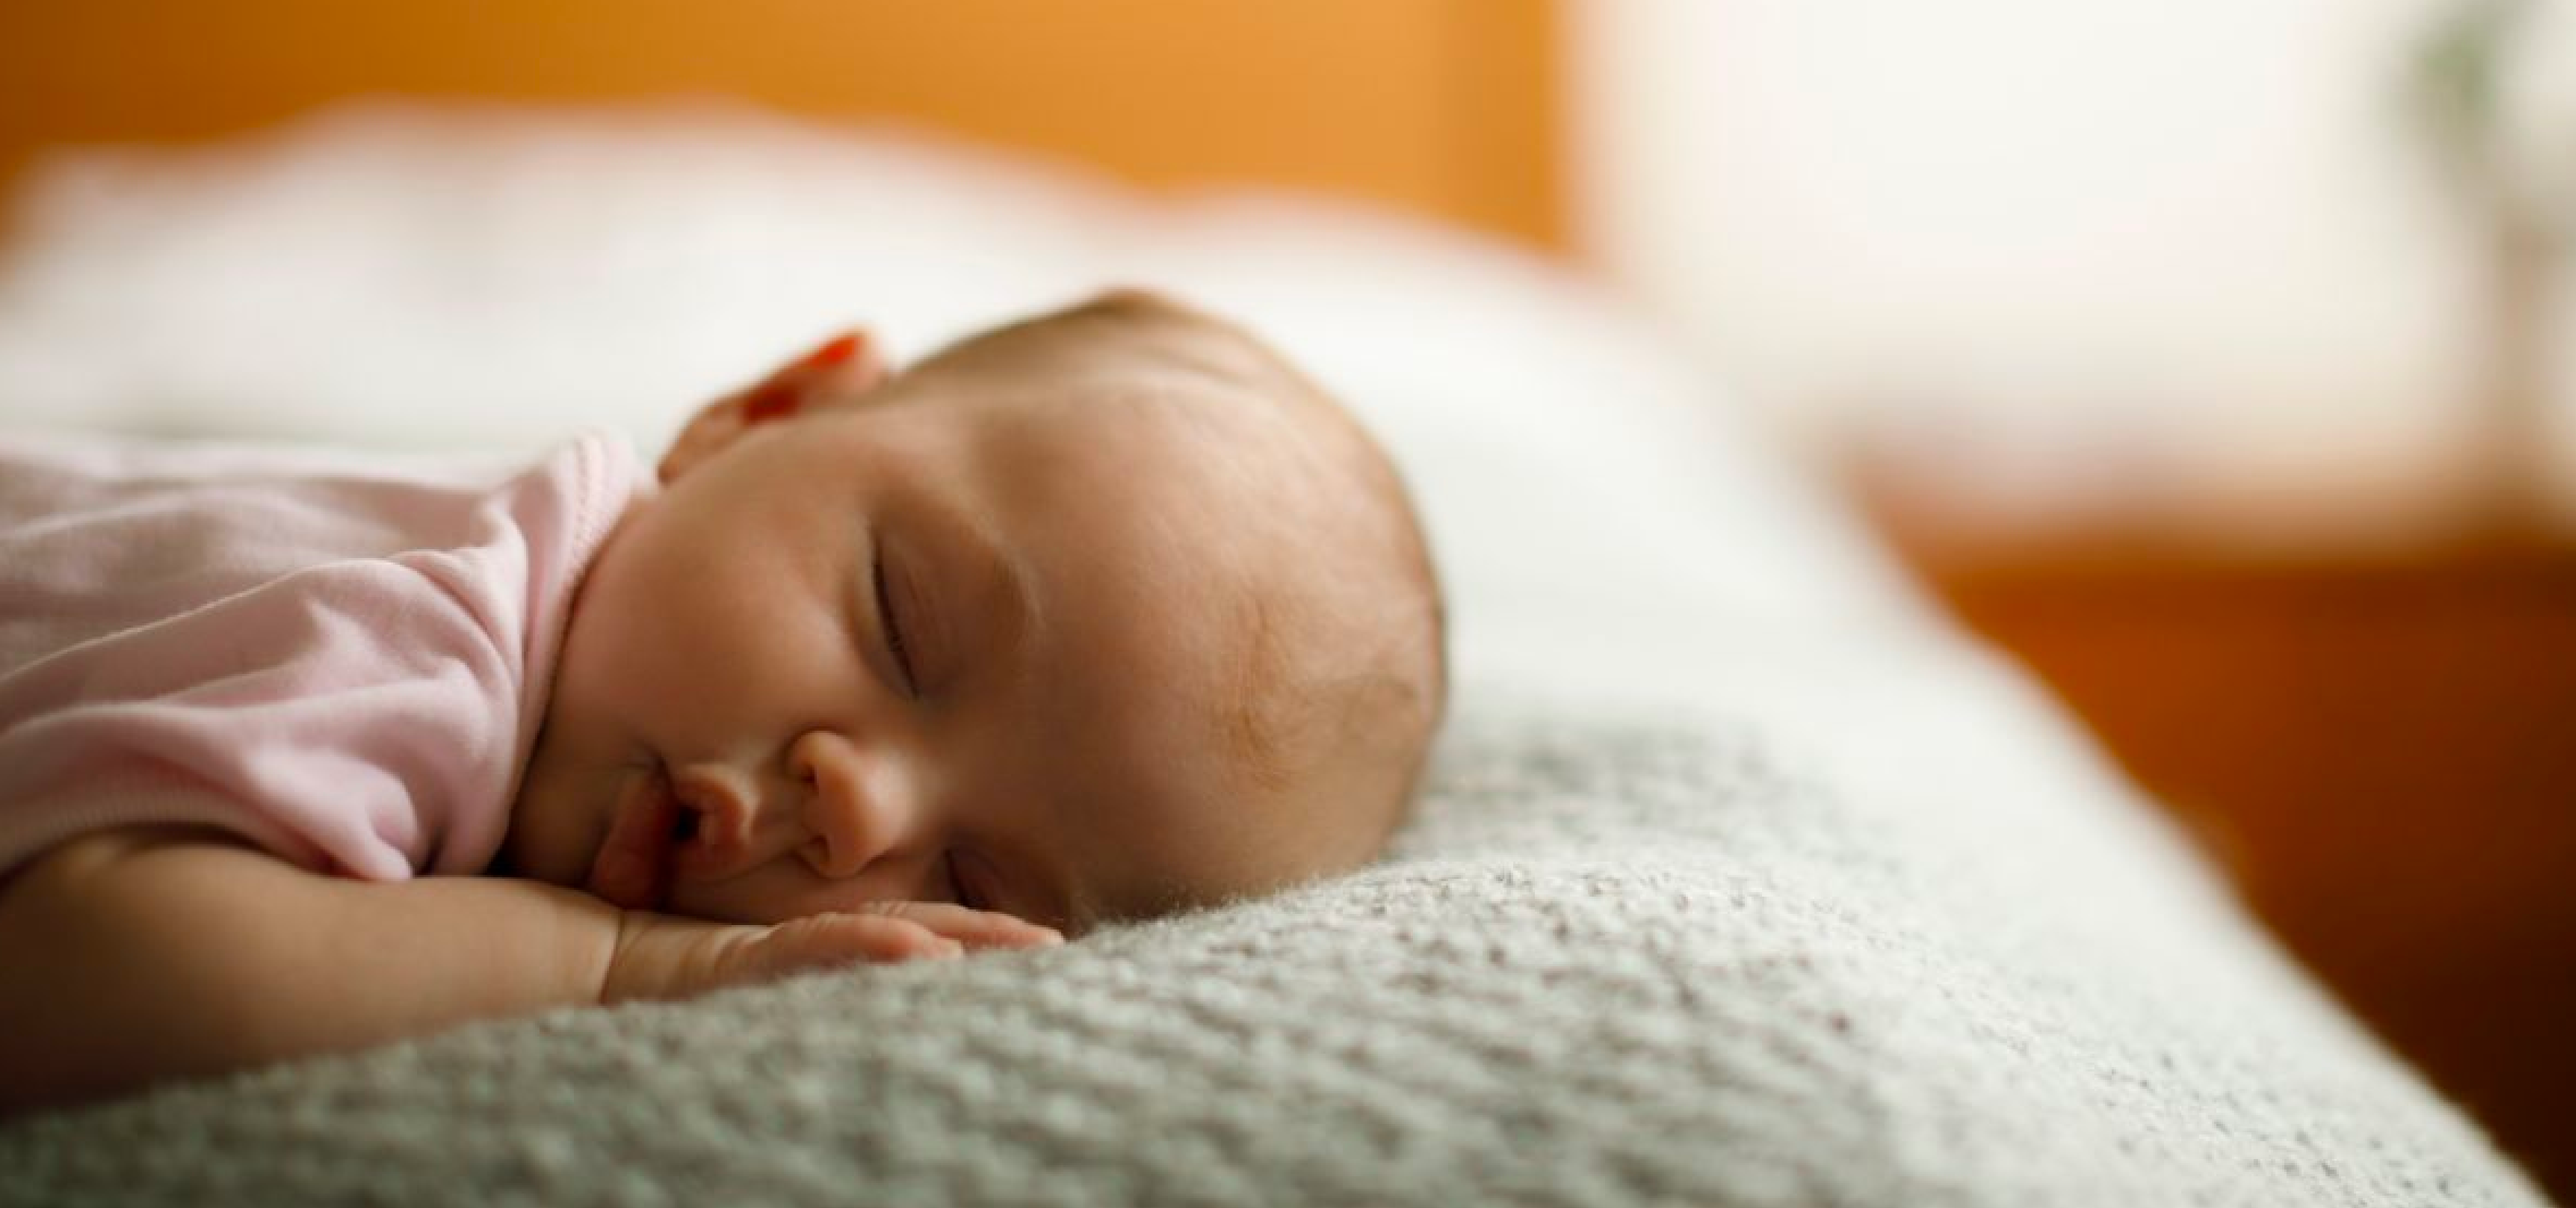 Bebé recién nacido niño en cama. Niño recién nacido duerme bajo